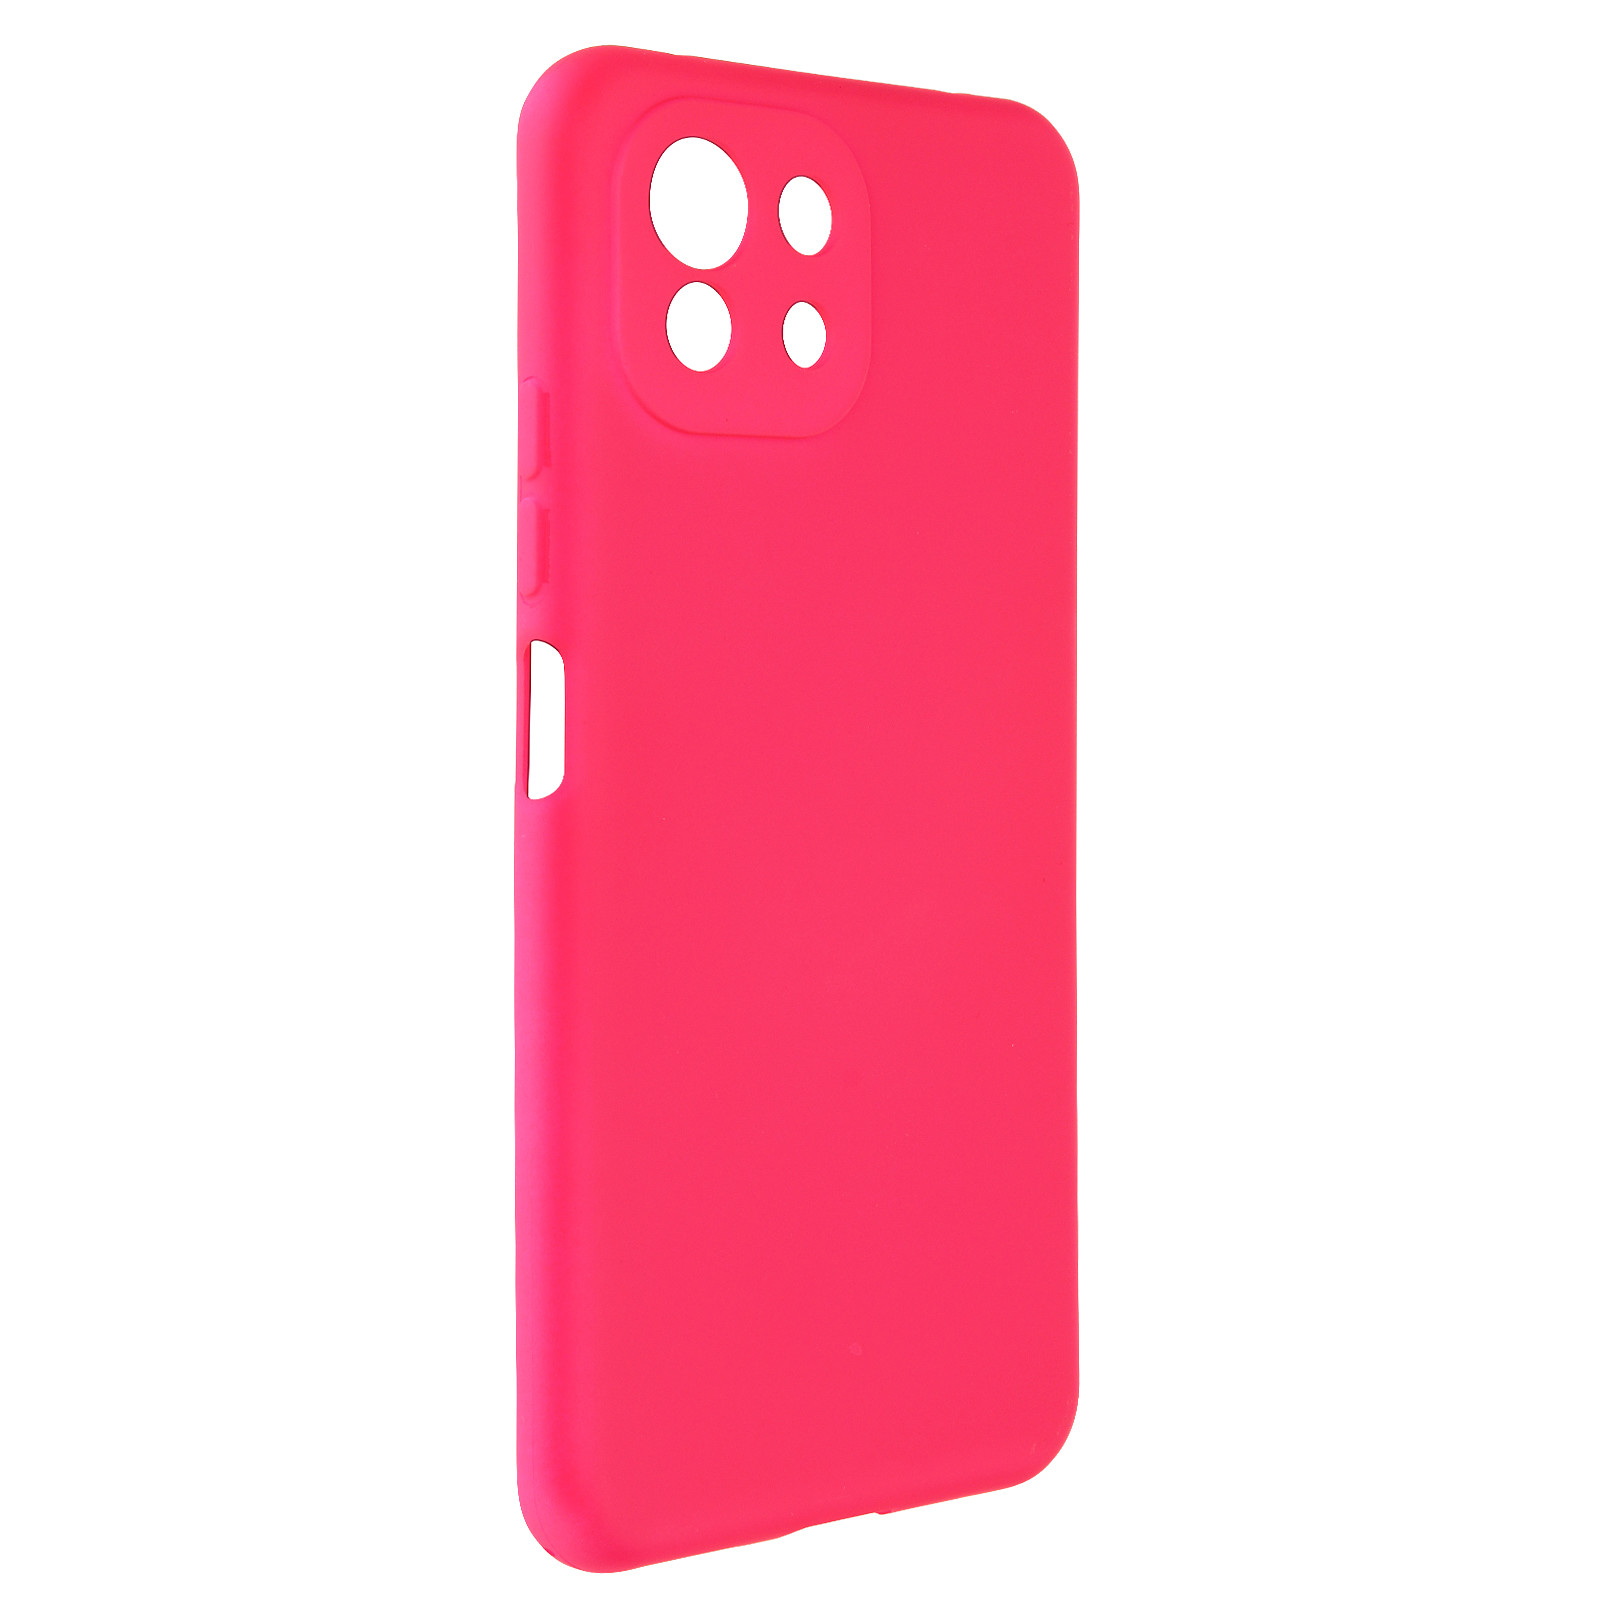 Avizar Coque pour Xiaomi Mi 11 Lite Silicone Semi-rigide Finition Soft Touch Fine fuschia - Coque telephone Avizar